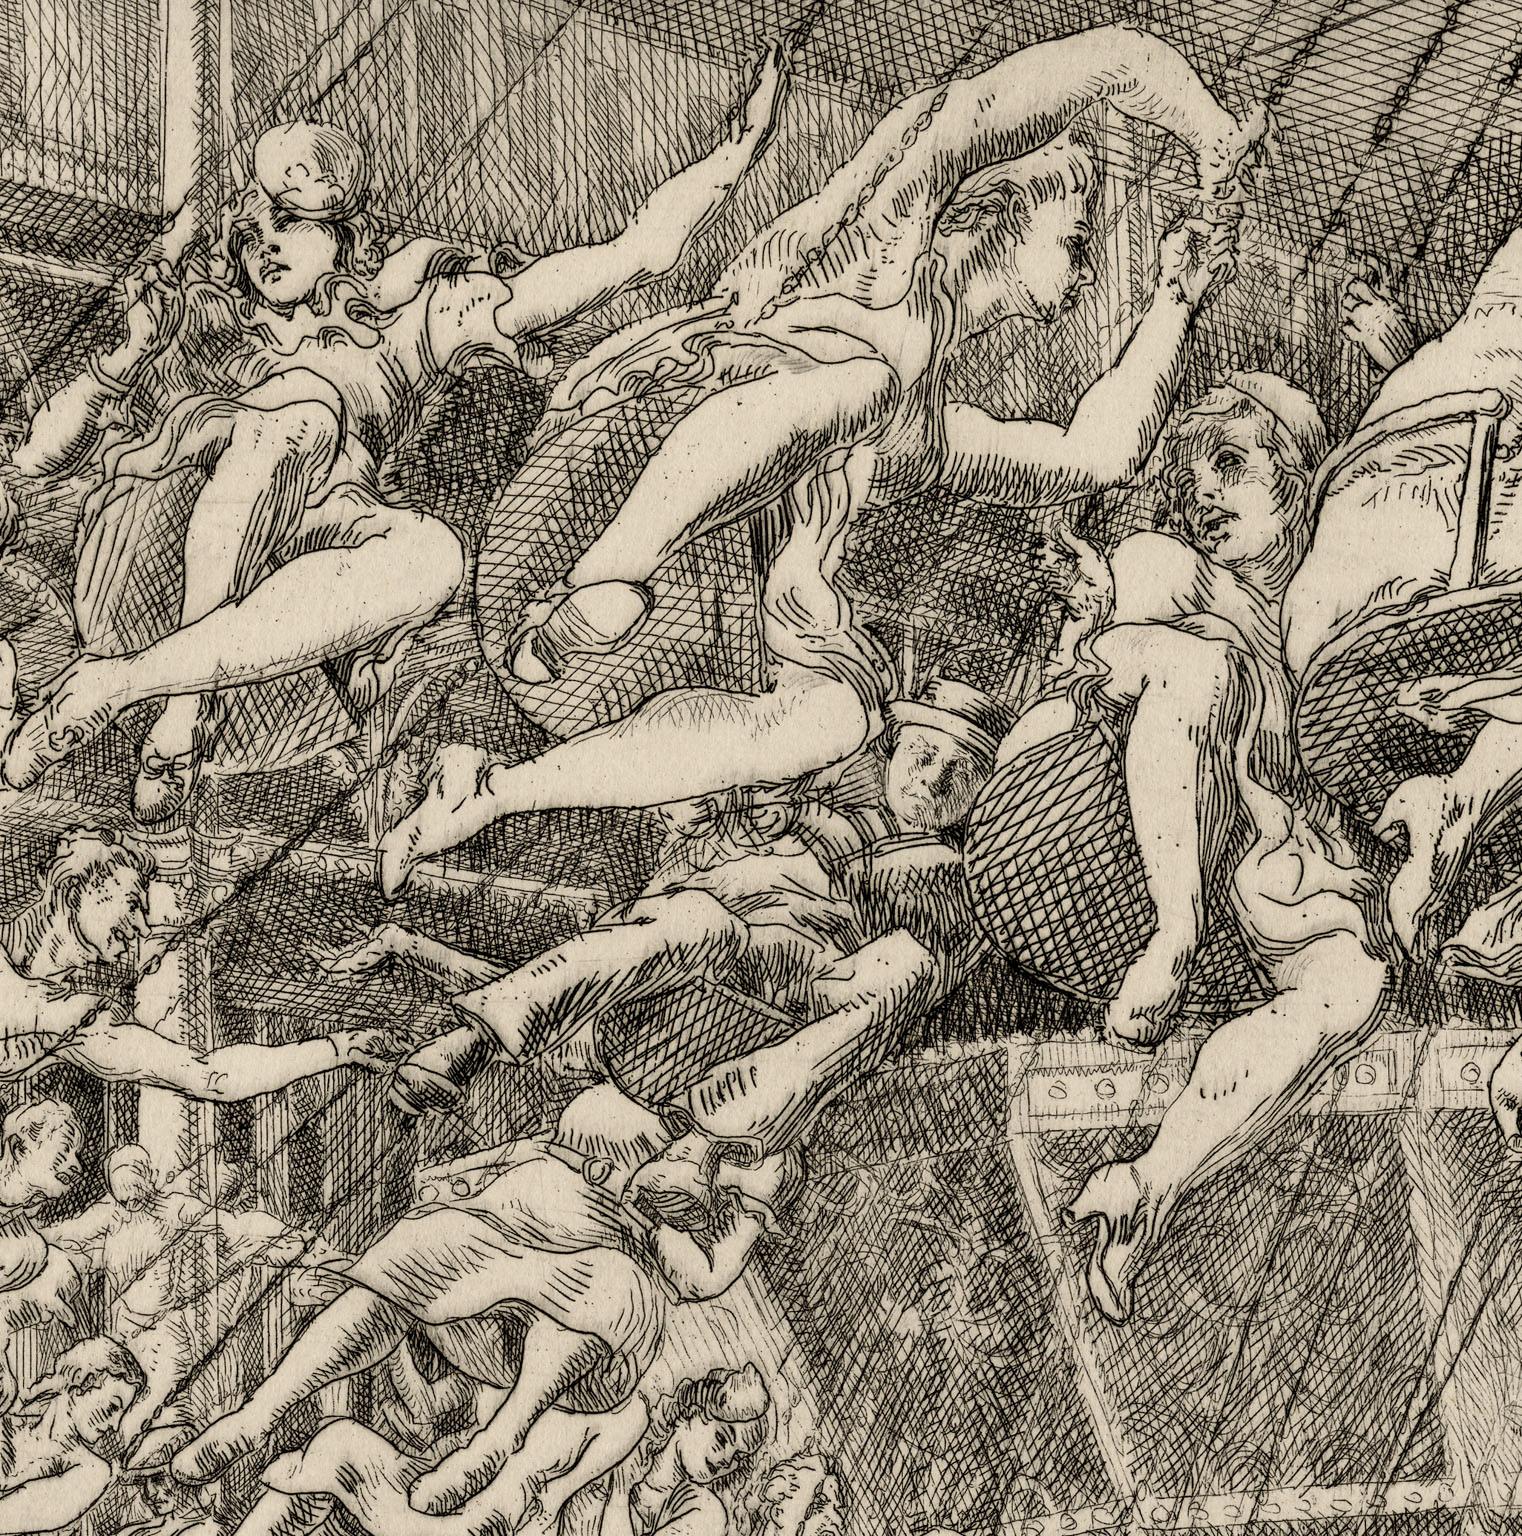 Steeplechase Swings - American Realist Print by Reginald Marsh